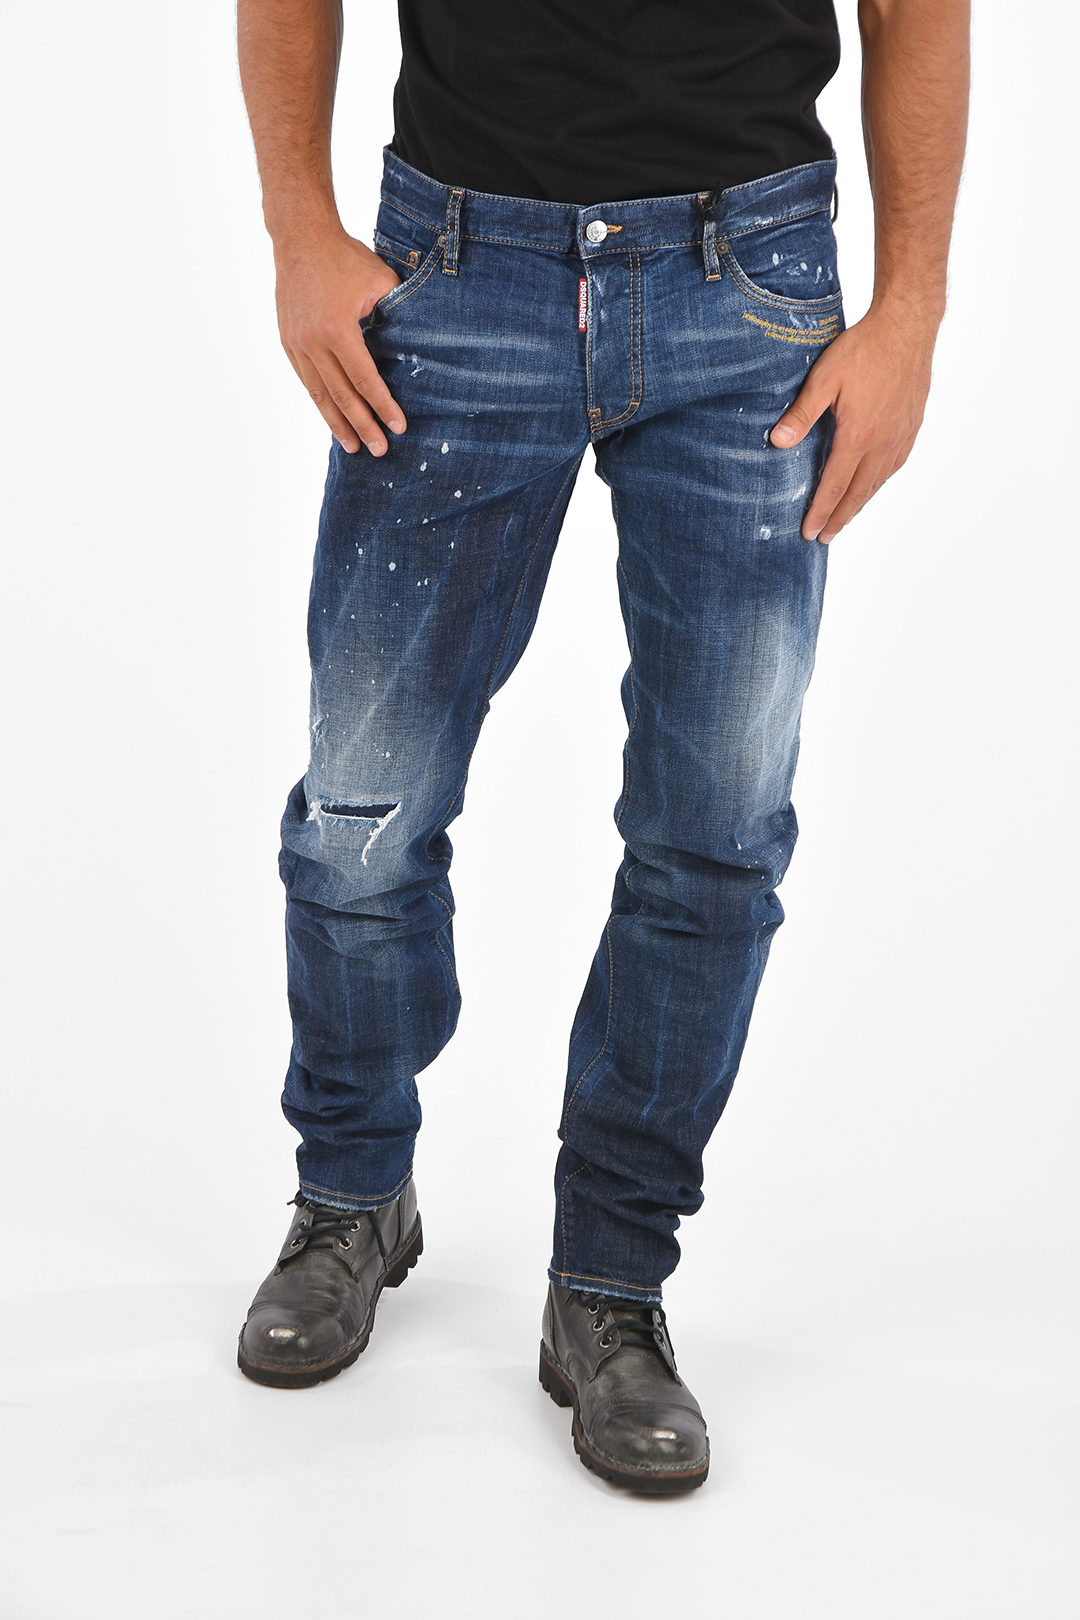 ergens bij betrokken zijn Federaal Weg huis Dsquared2 Low-Waist Slim Fit Jeans 18 Cm men - Glamood Outlet